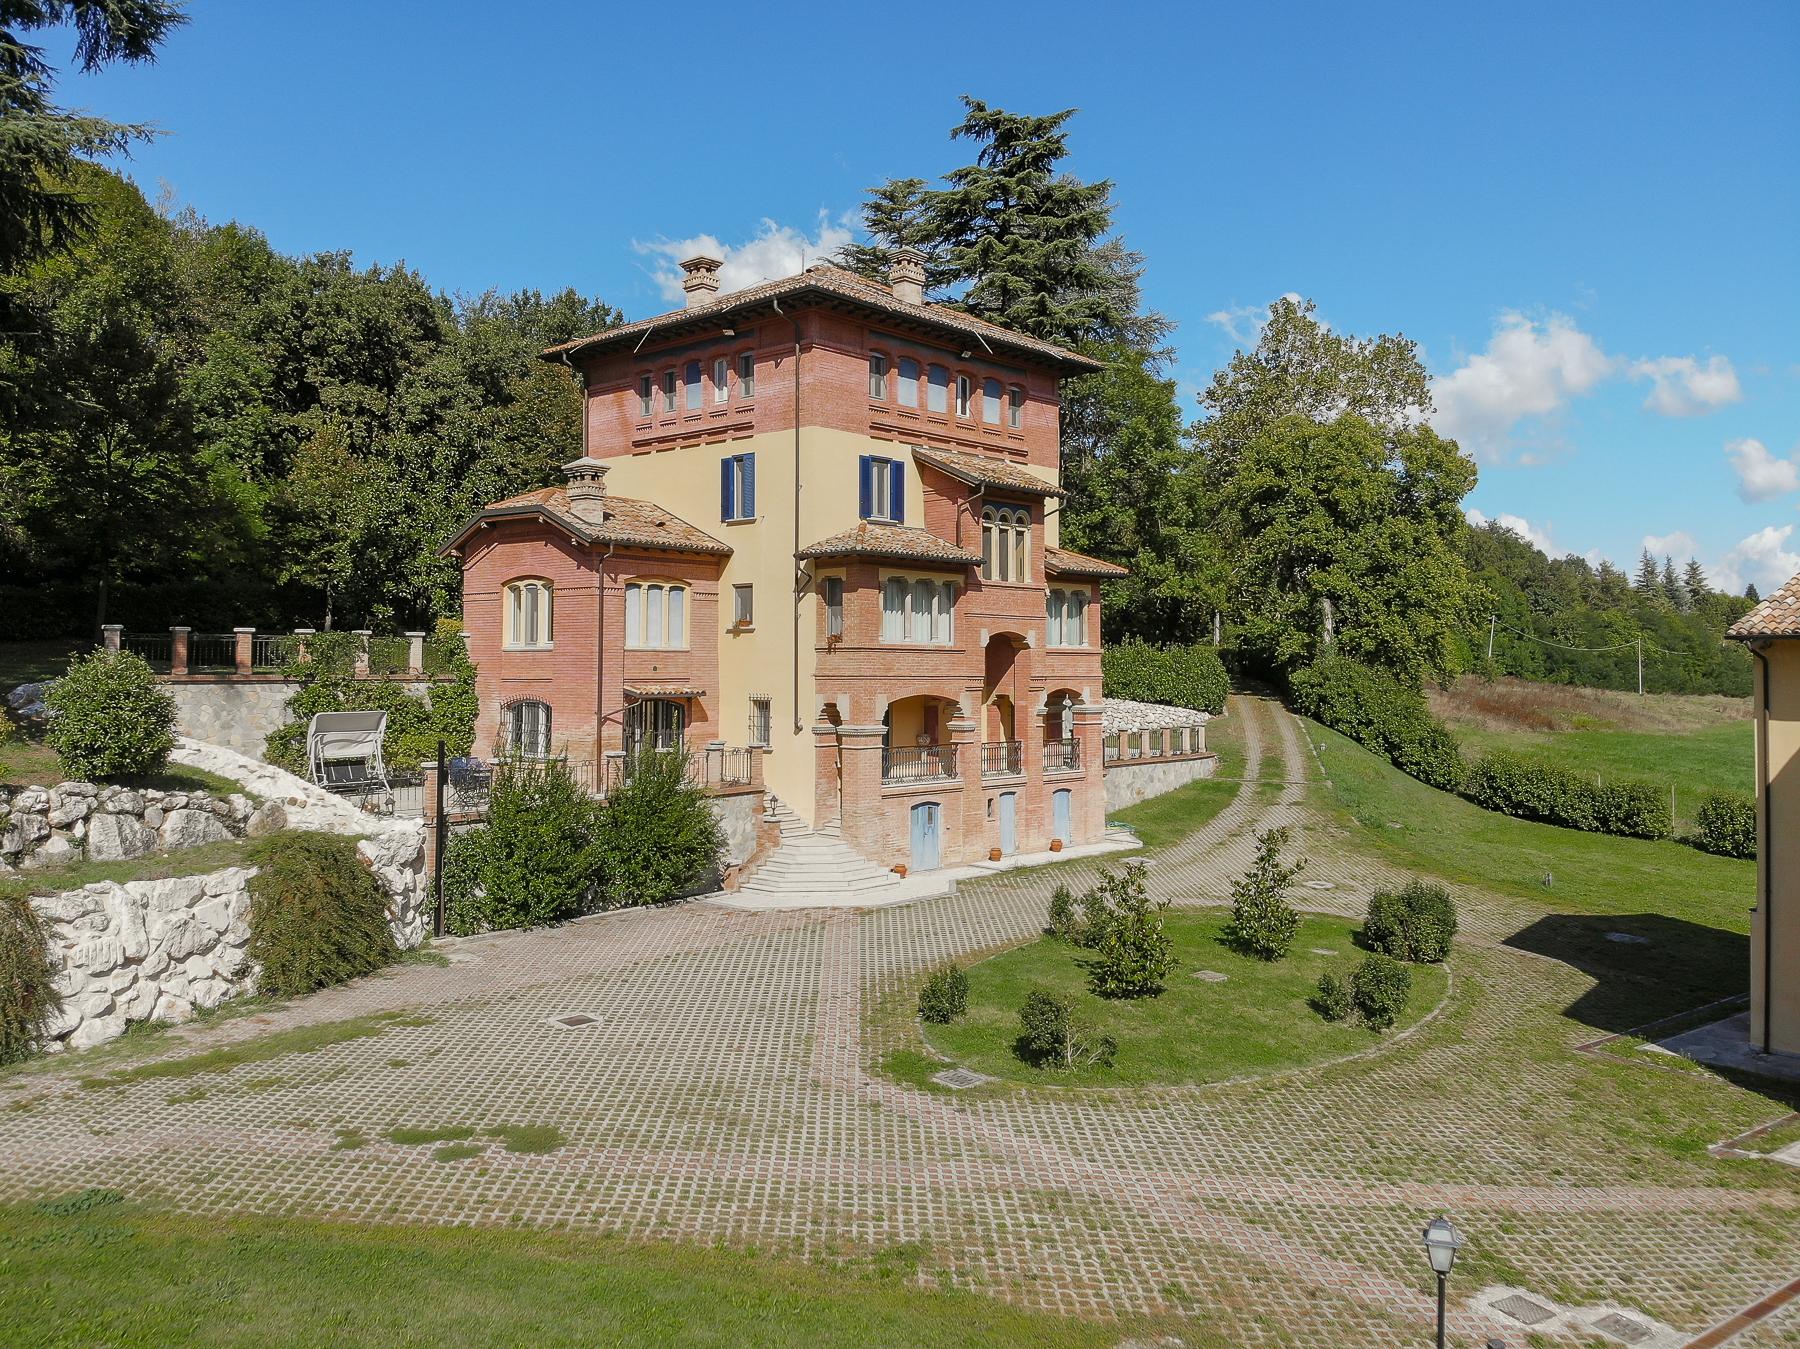 Splendida villa d'epoca sui colli di Salsomaggiore Terme - 1